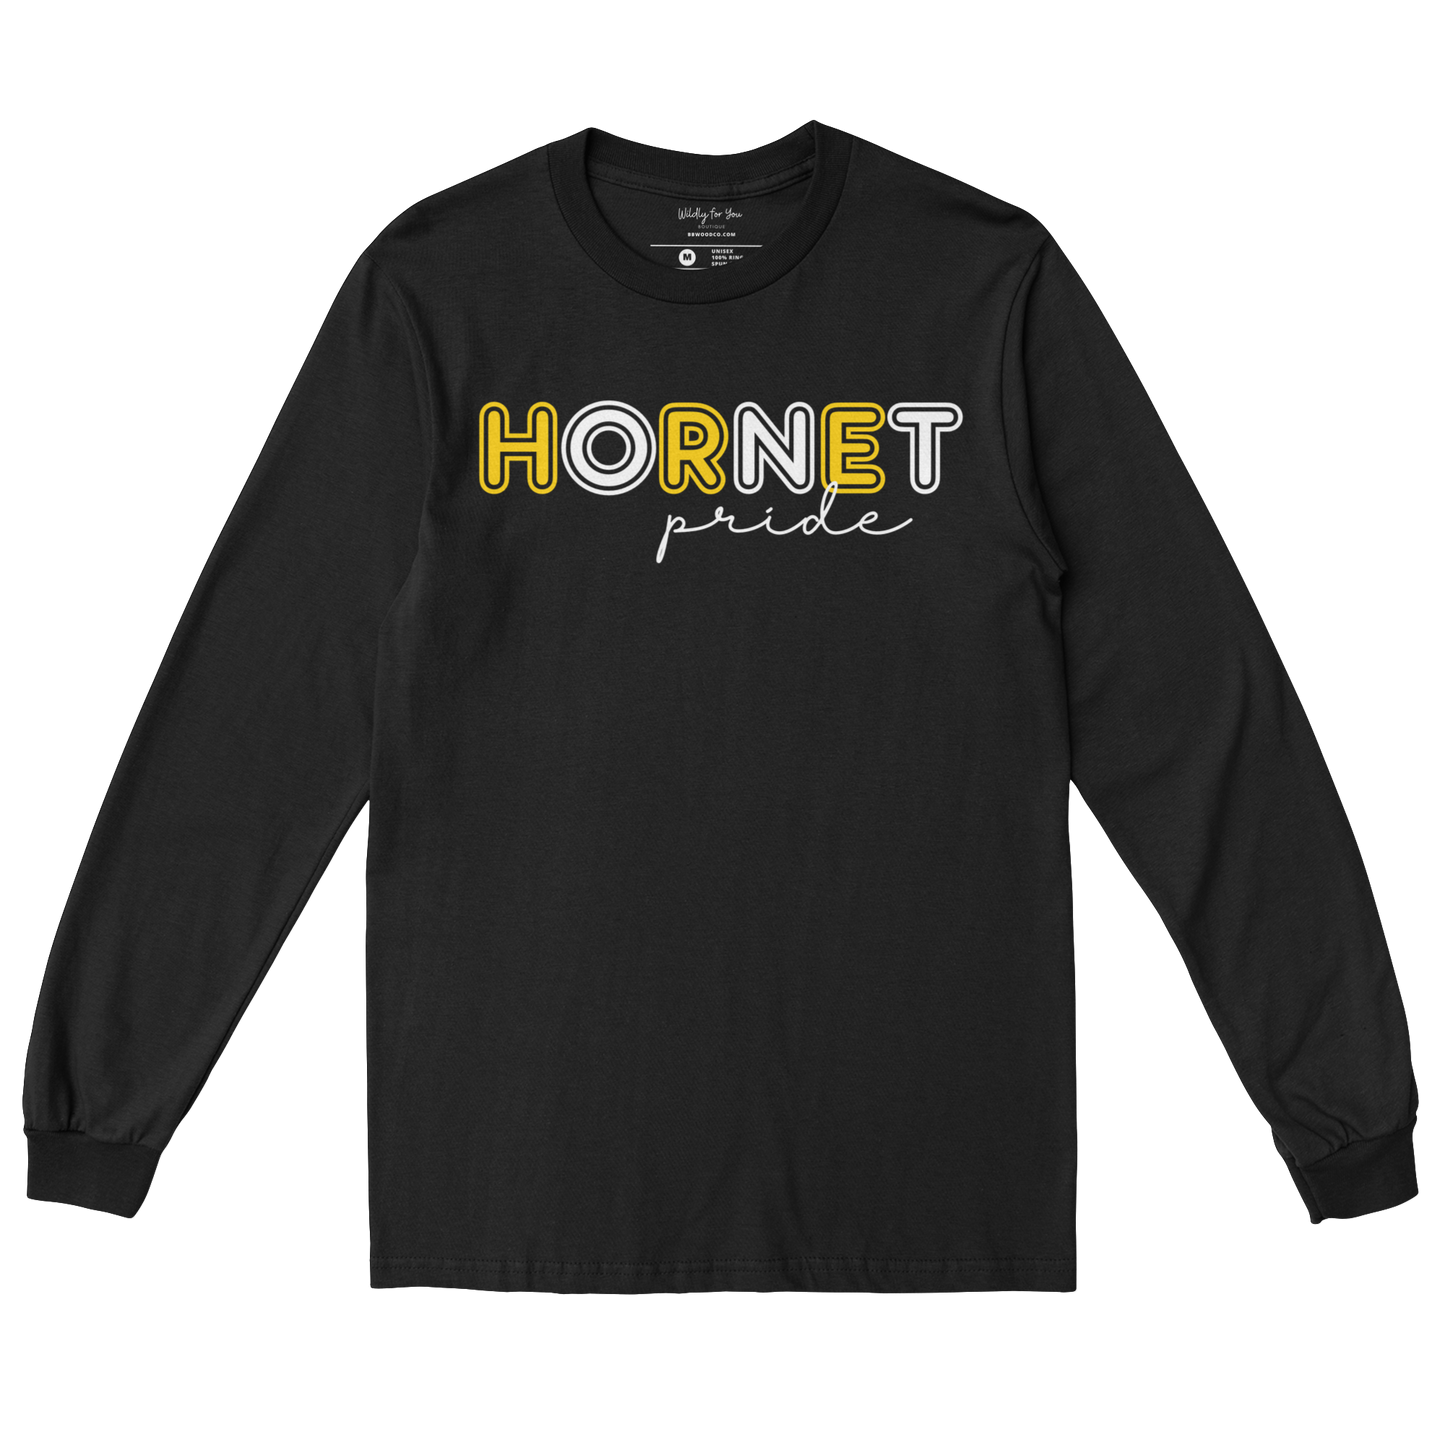 Hornet Pride Youth Long Sleeve Tee